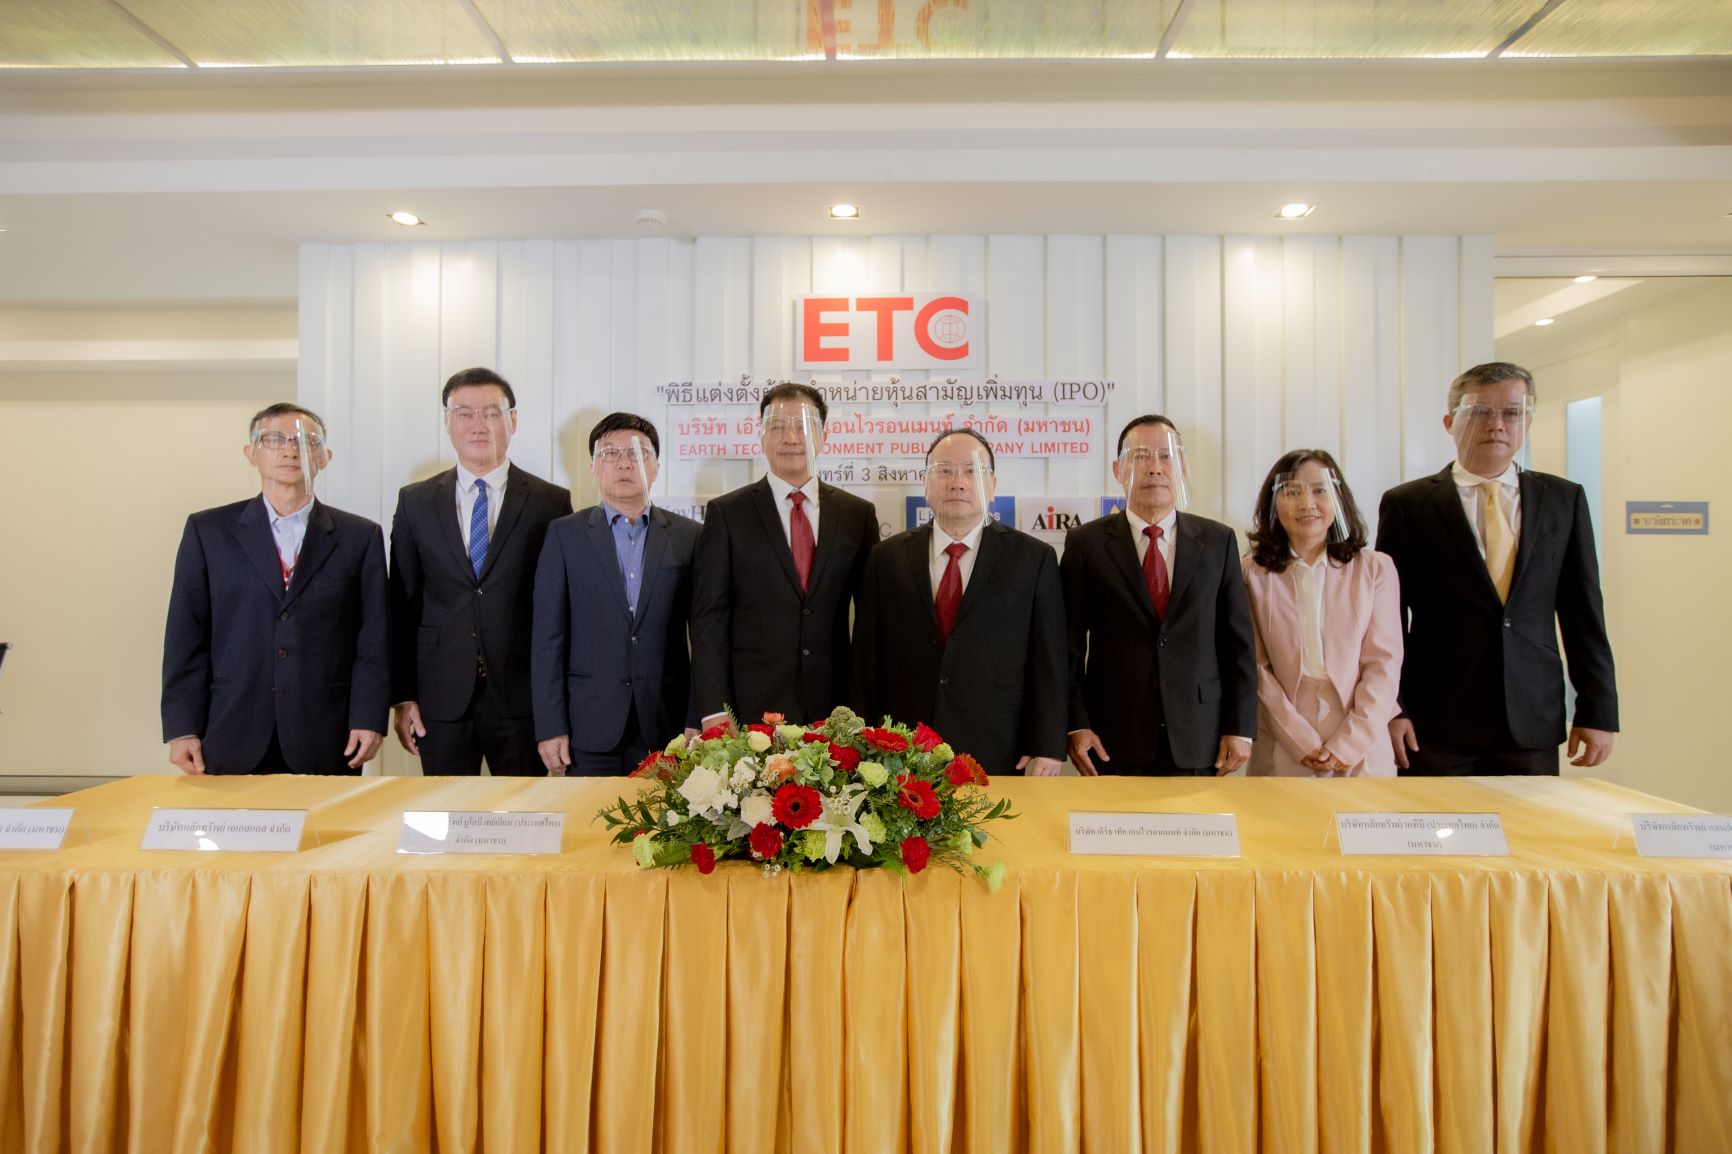 โรงไฟฟ้าขยะตัวแรกของไทย ETC เคาะราคาไอพีโอ 2.60 บาท ชูกำไรเติบโตแรง พร้อมประมูลโรงไฟฟ้าขยะ 444 เมกะวัตต์ กระแสนักลงทุนแรงจริง เปิดจอง 4-11